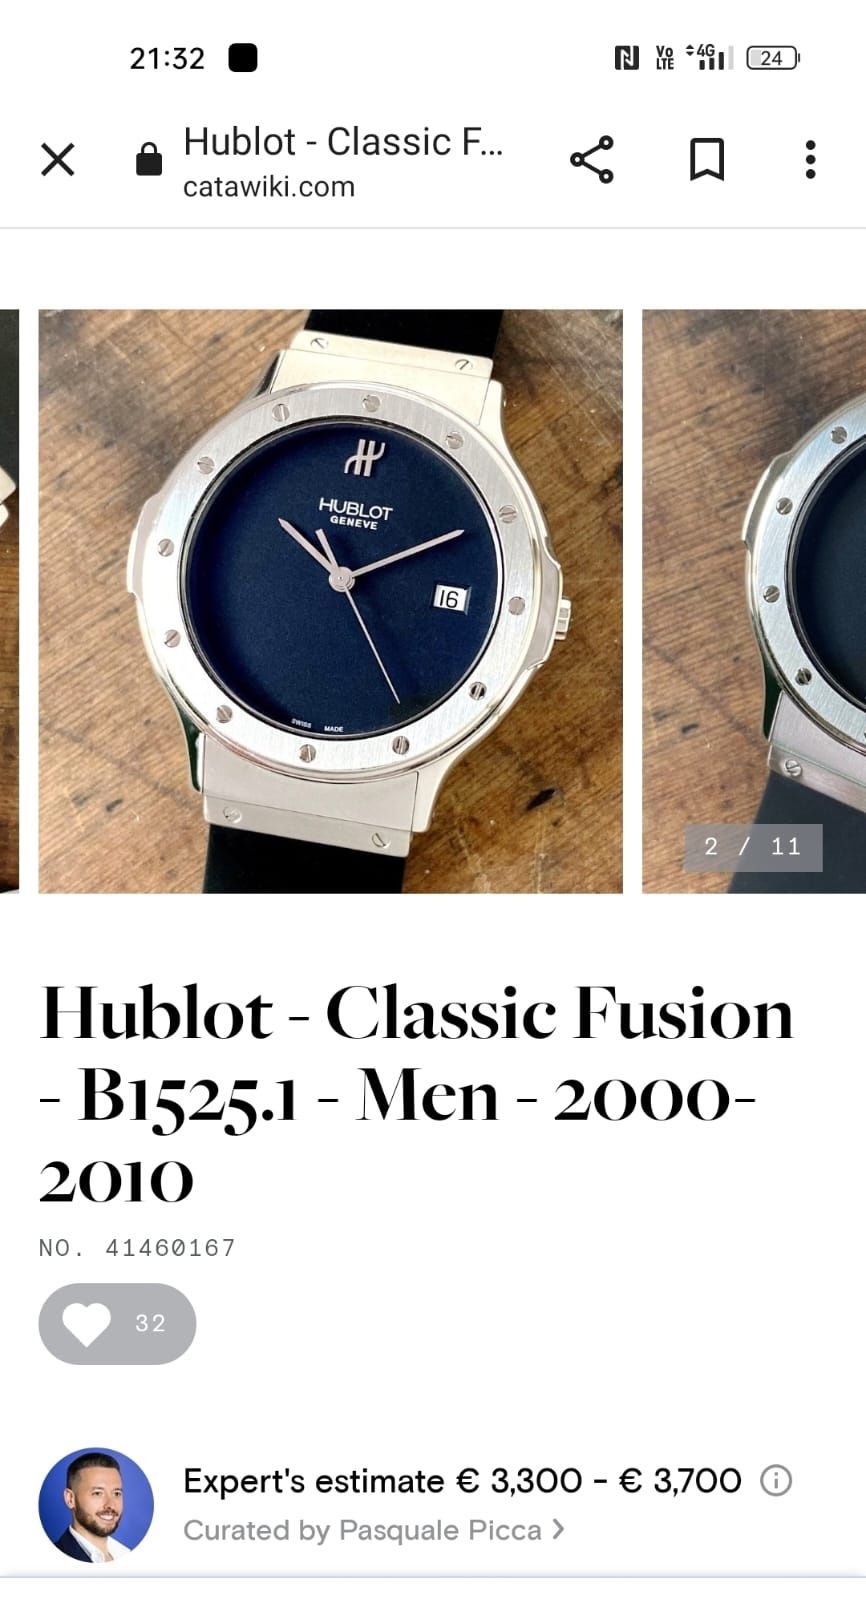 HUBLOT Classic Fusion autentic B1525.1 cristal safir 36mm stare buna